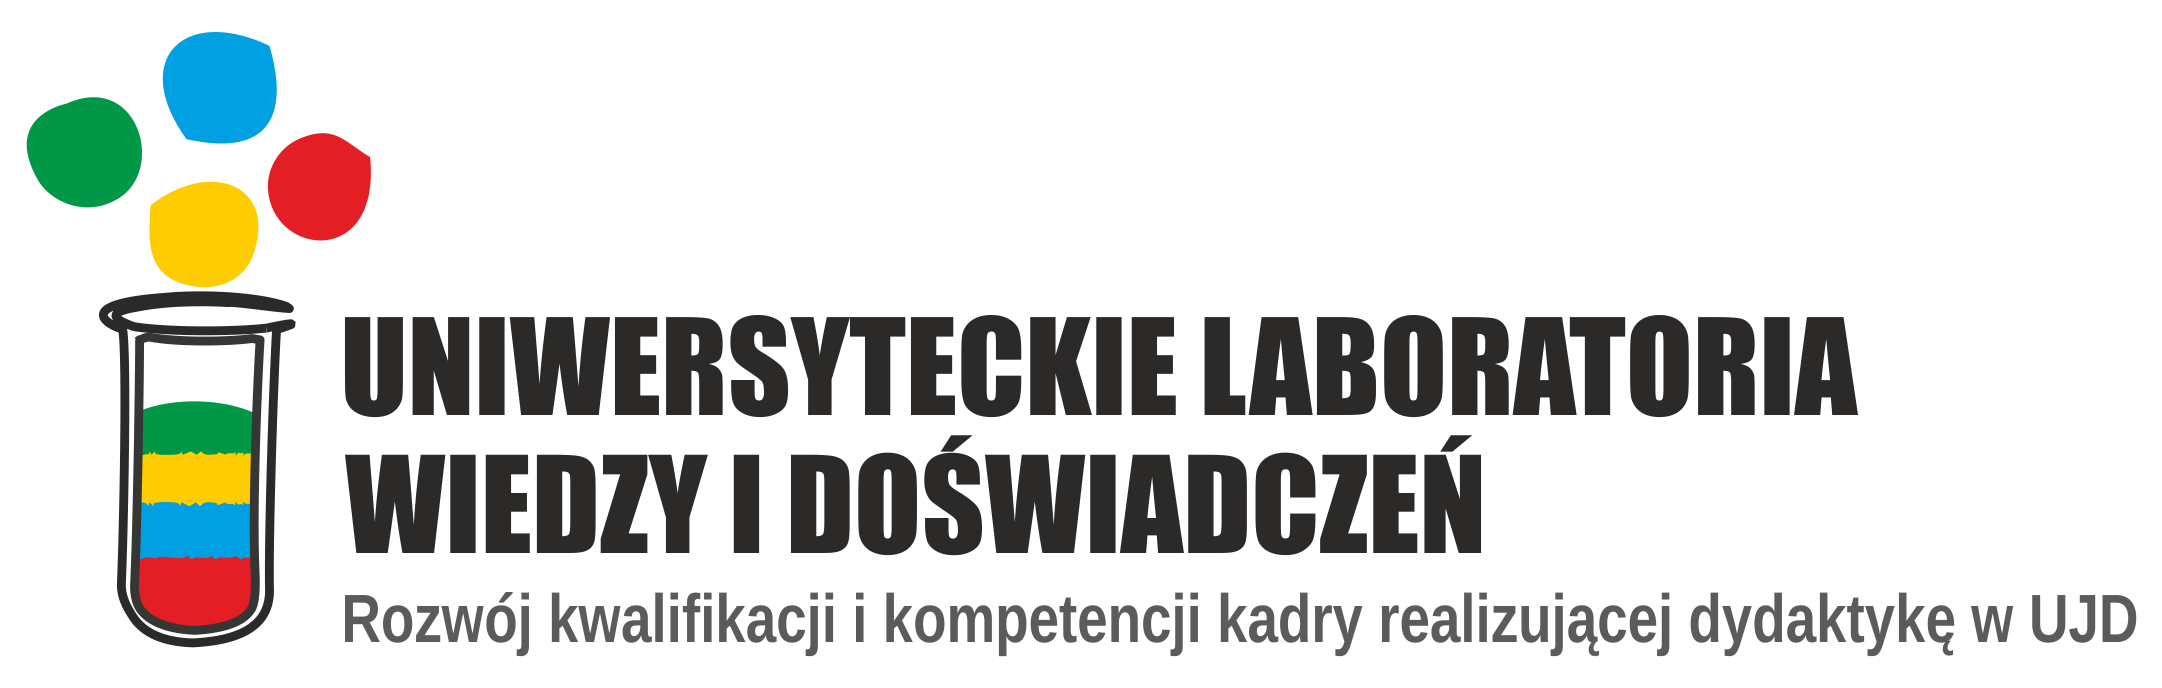 Logotyp projektu Uniwersyteckie laboratoria wiedzy i doświadczeń